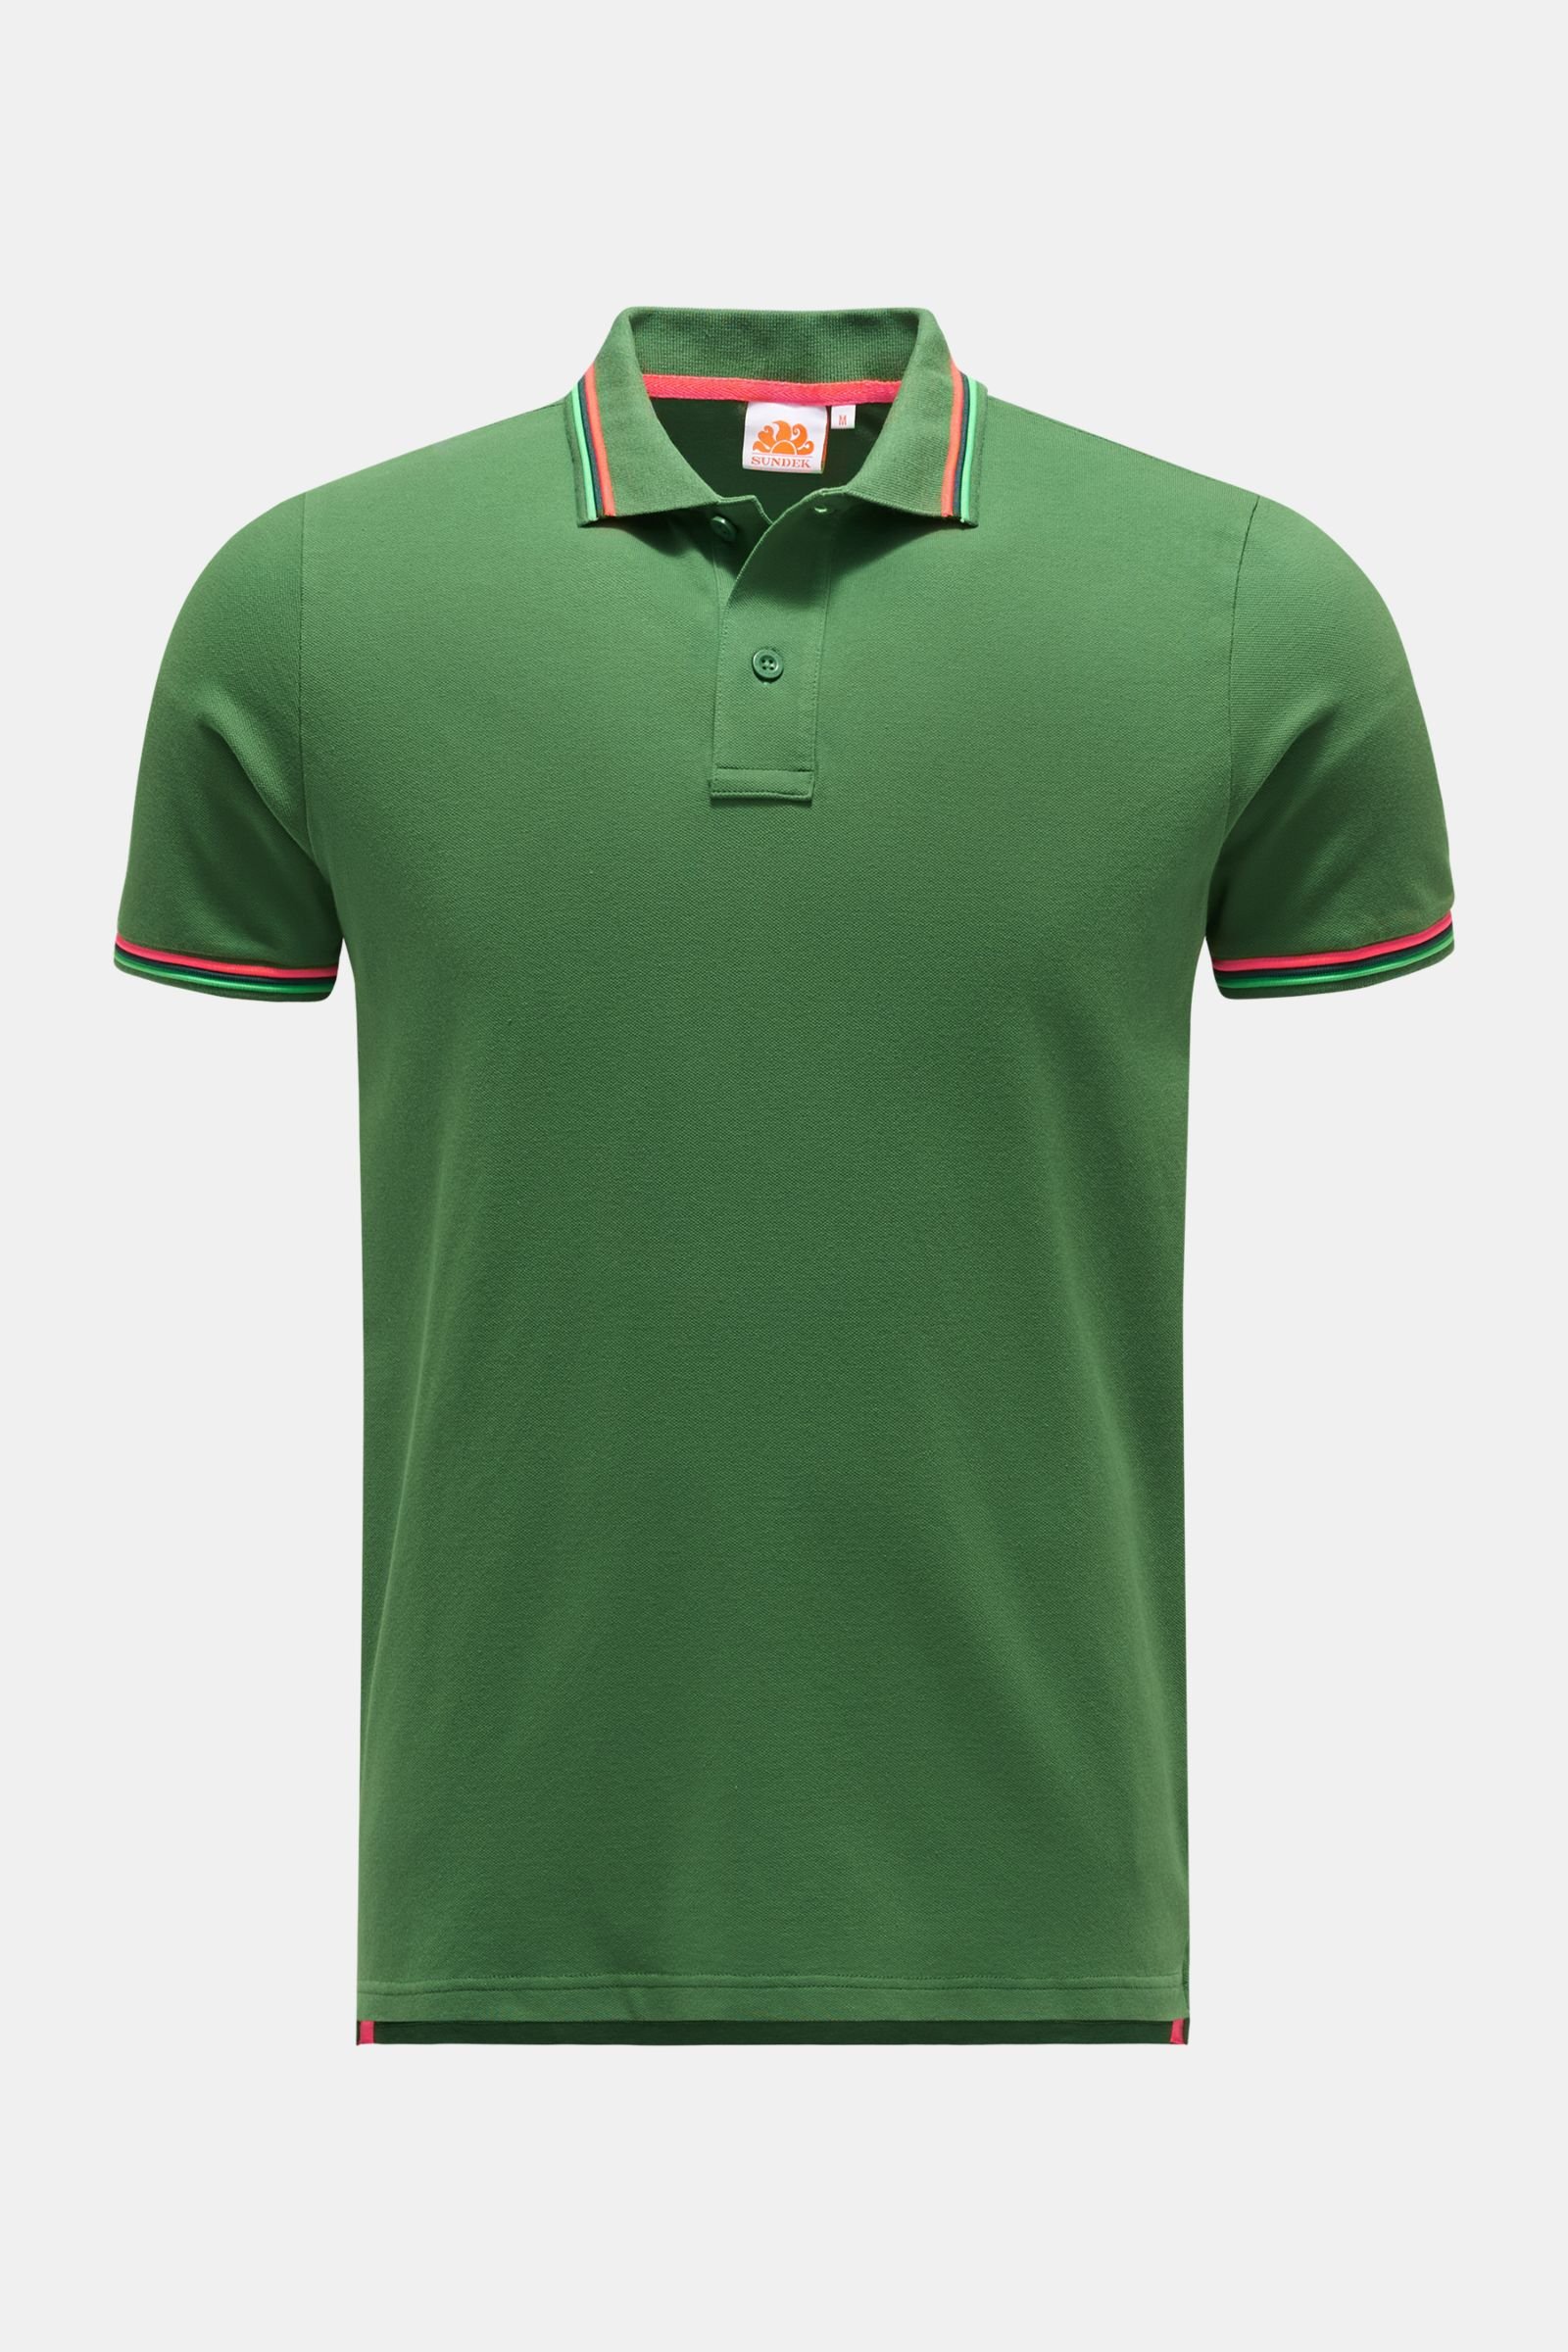 Polo shirt green